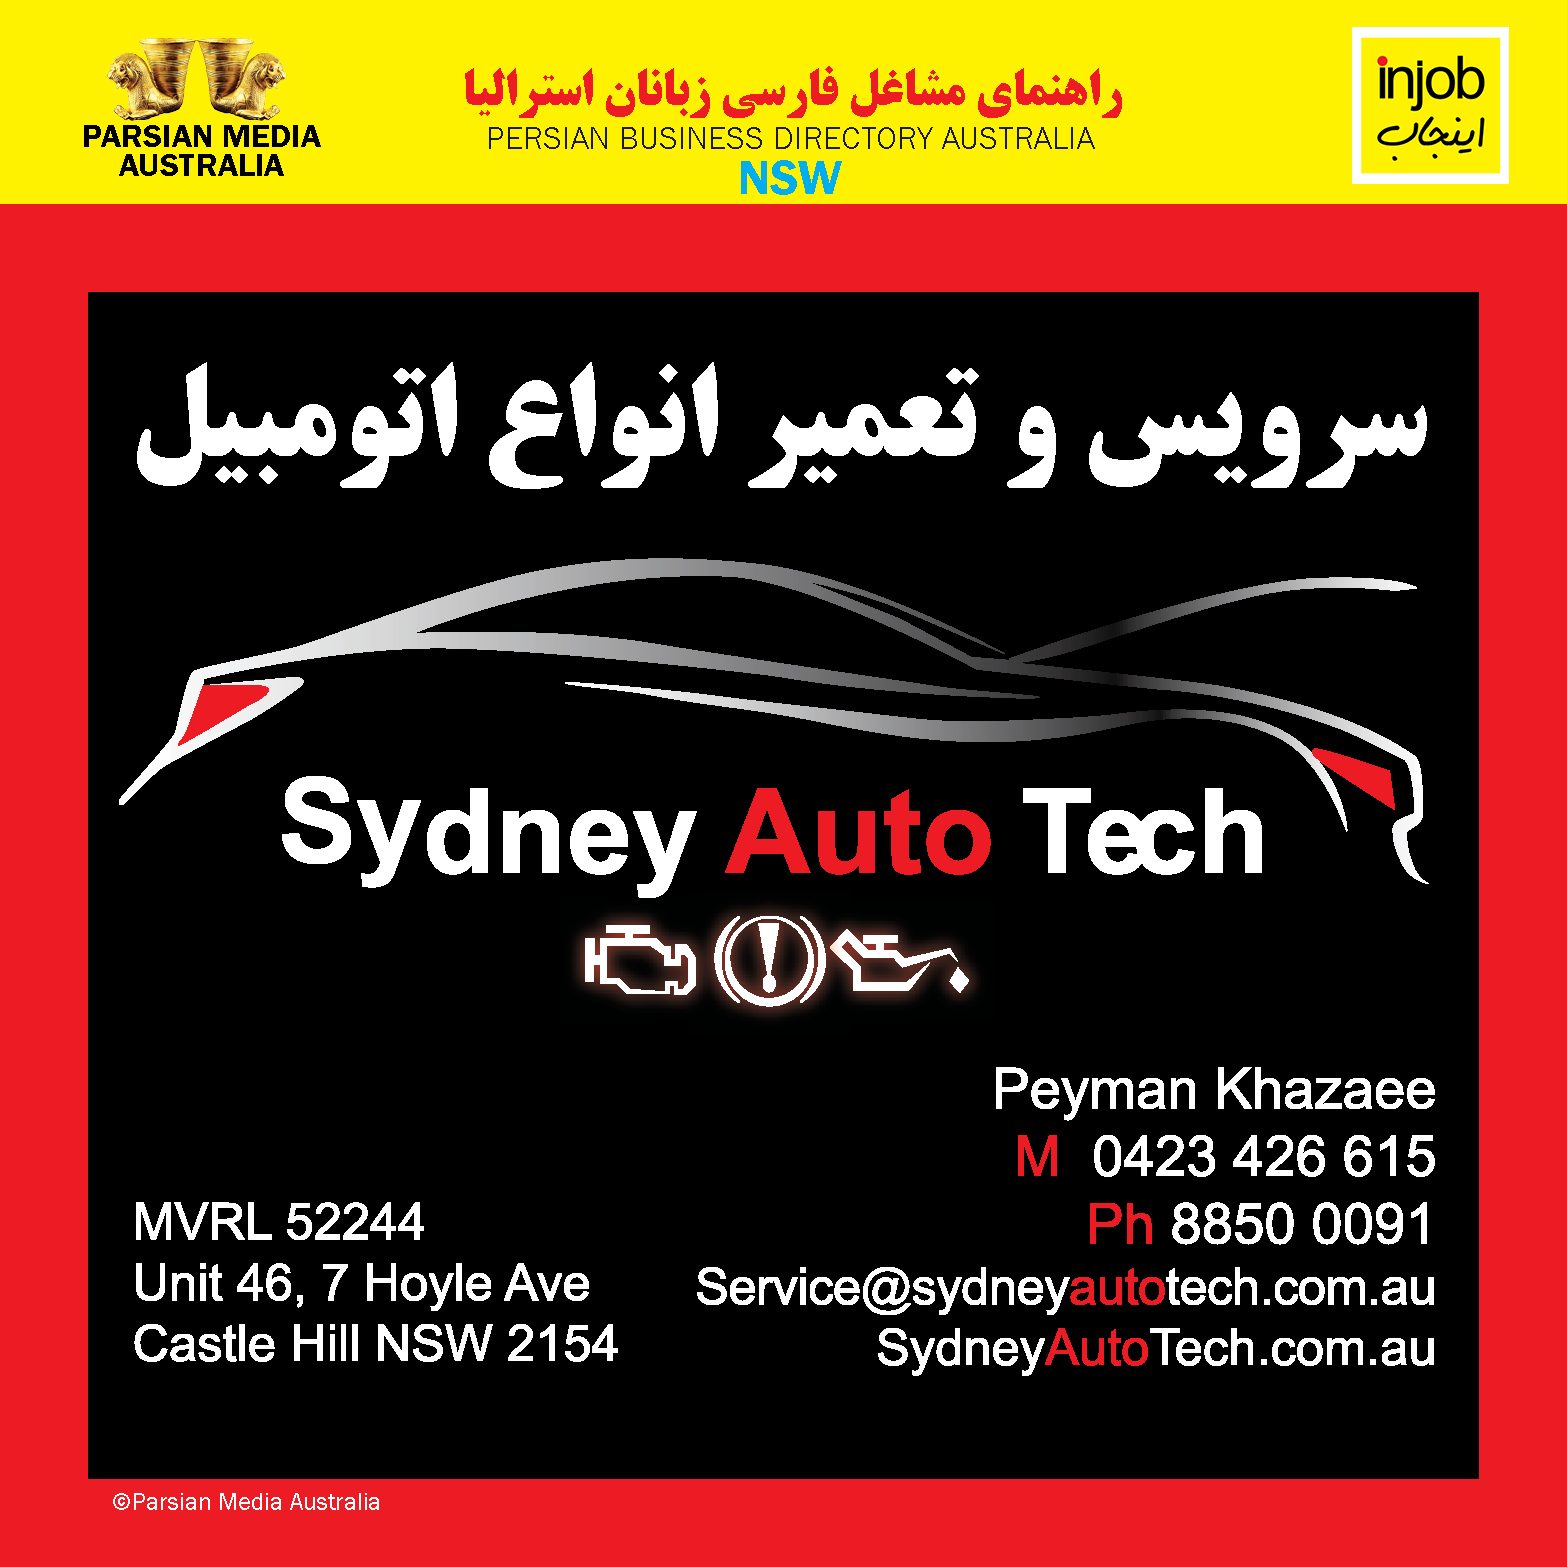 Sydney Auto Tec-Injob 2021-online-app-V1.jpg